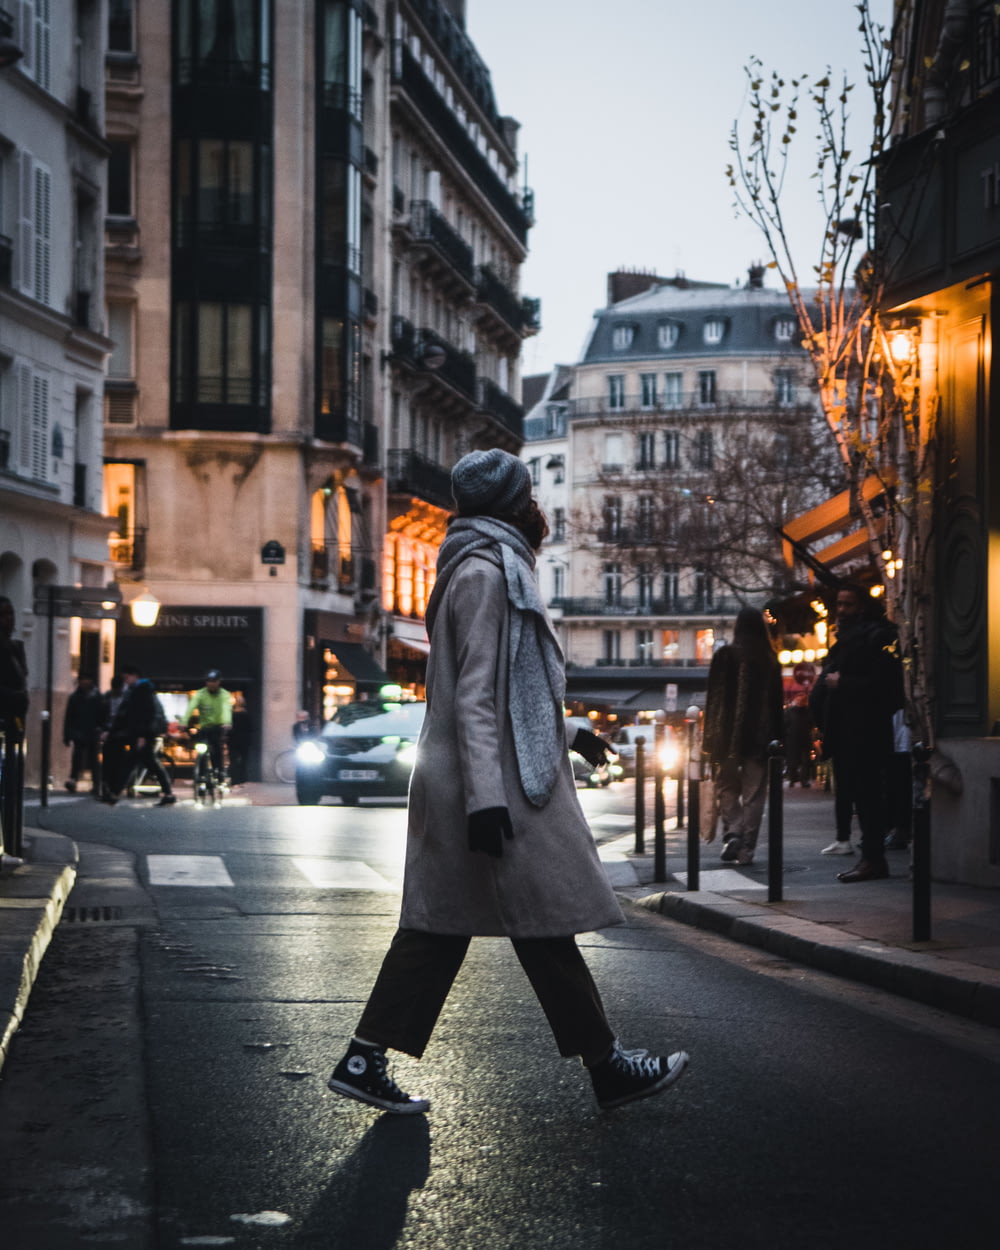 a person in a garment walking down a street